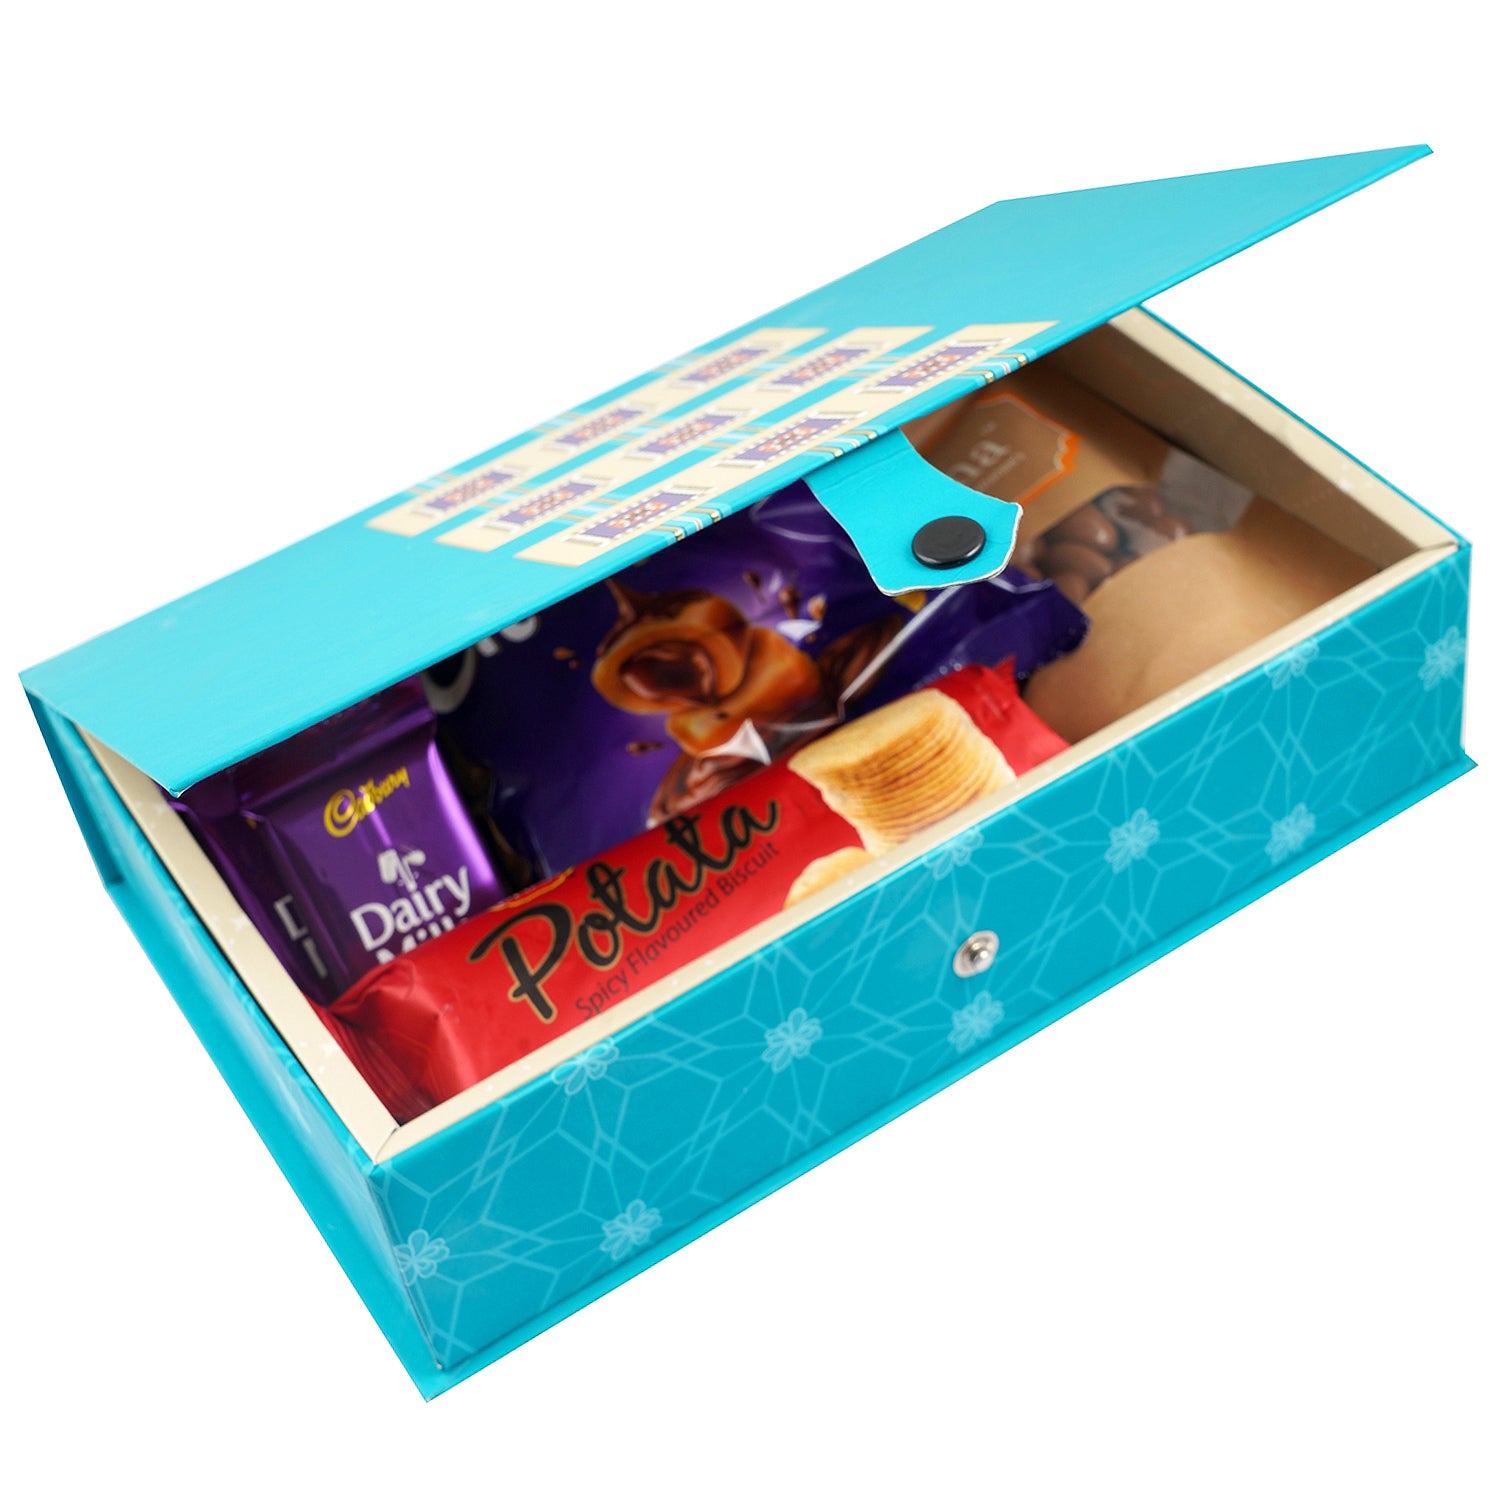 Send Sweet Gift Box for Valentine Online - VL22-101187 | Giftalove